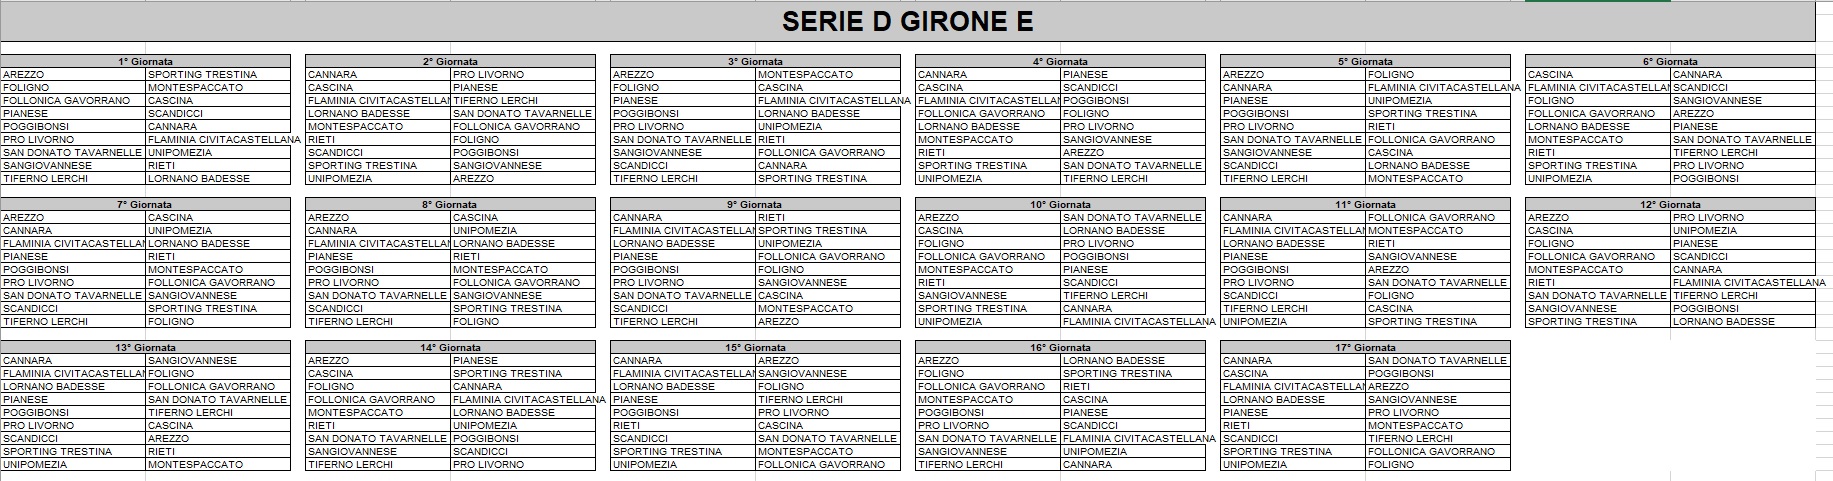 Serie D girone E, il calendario completo